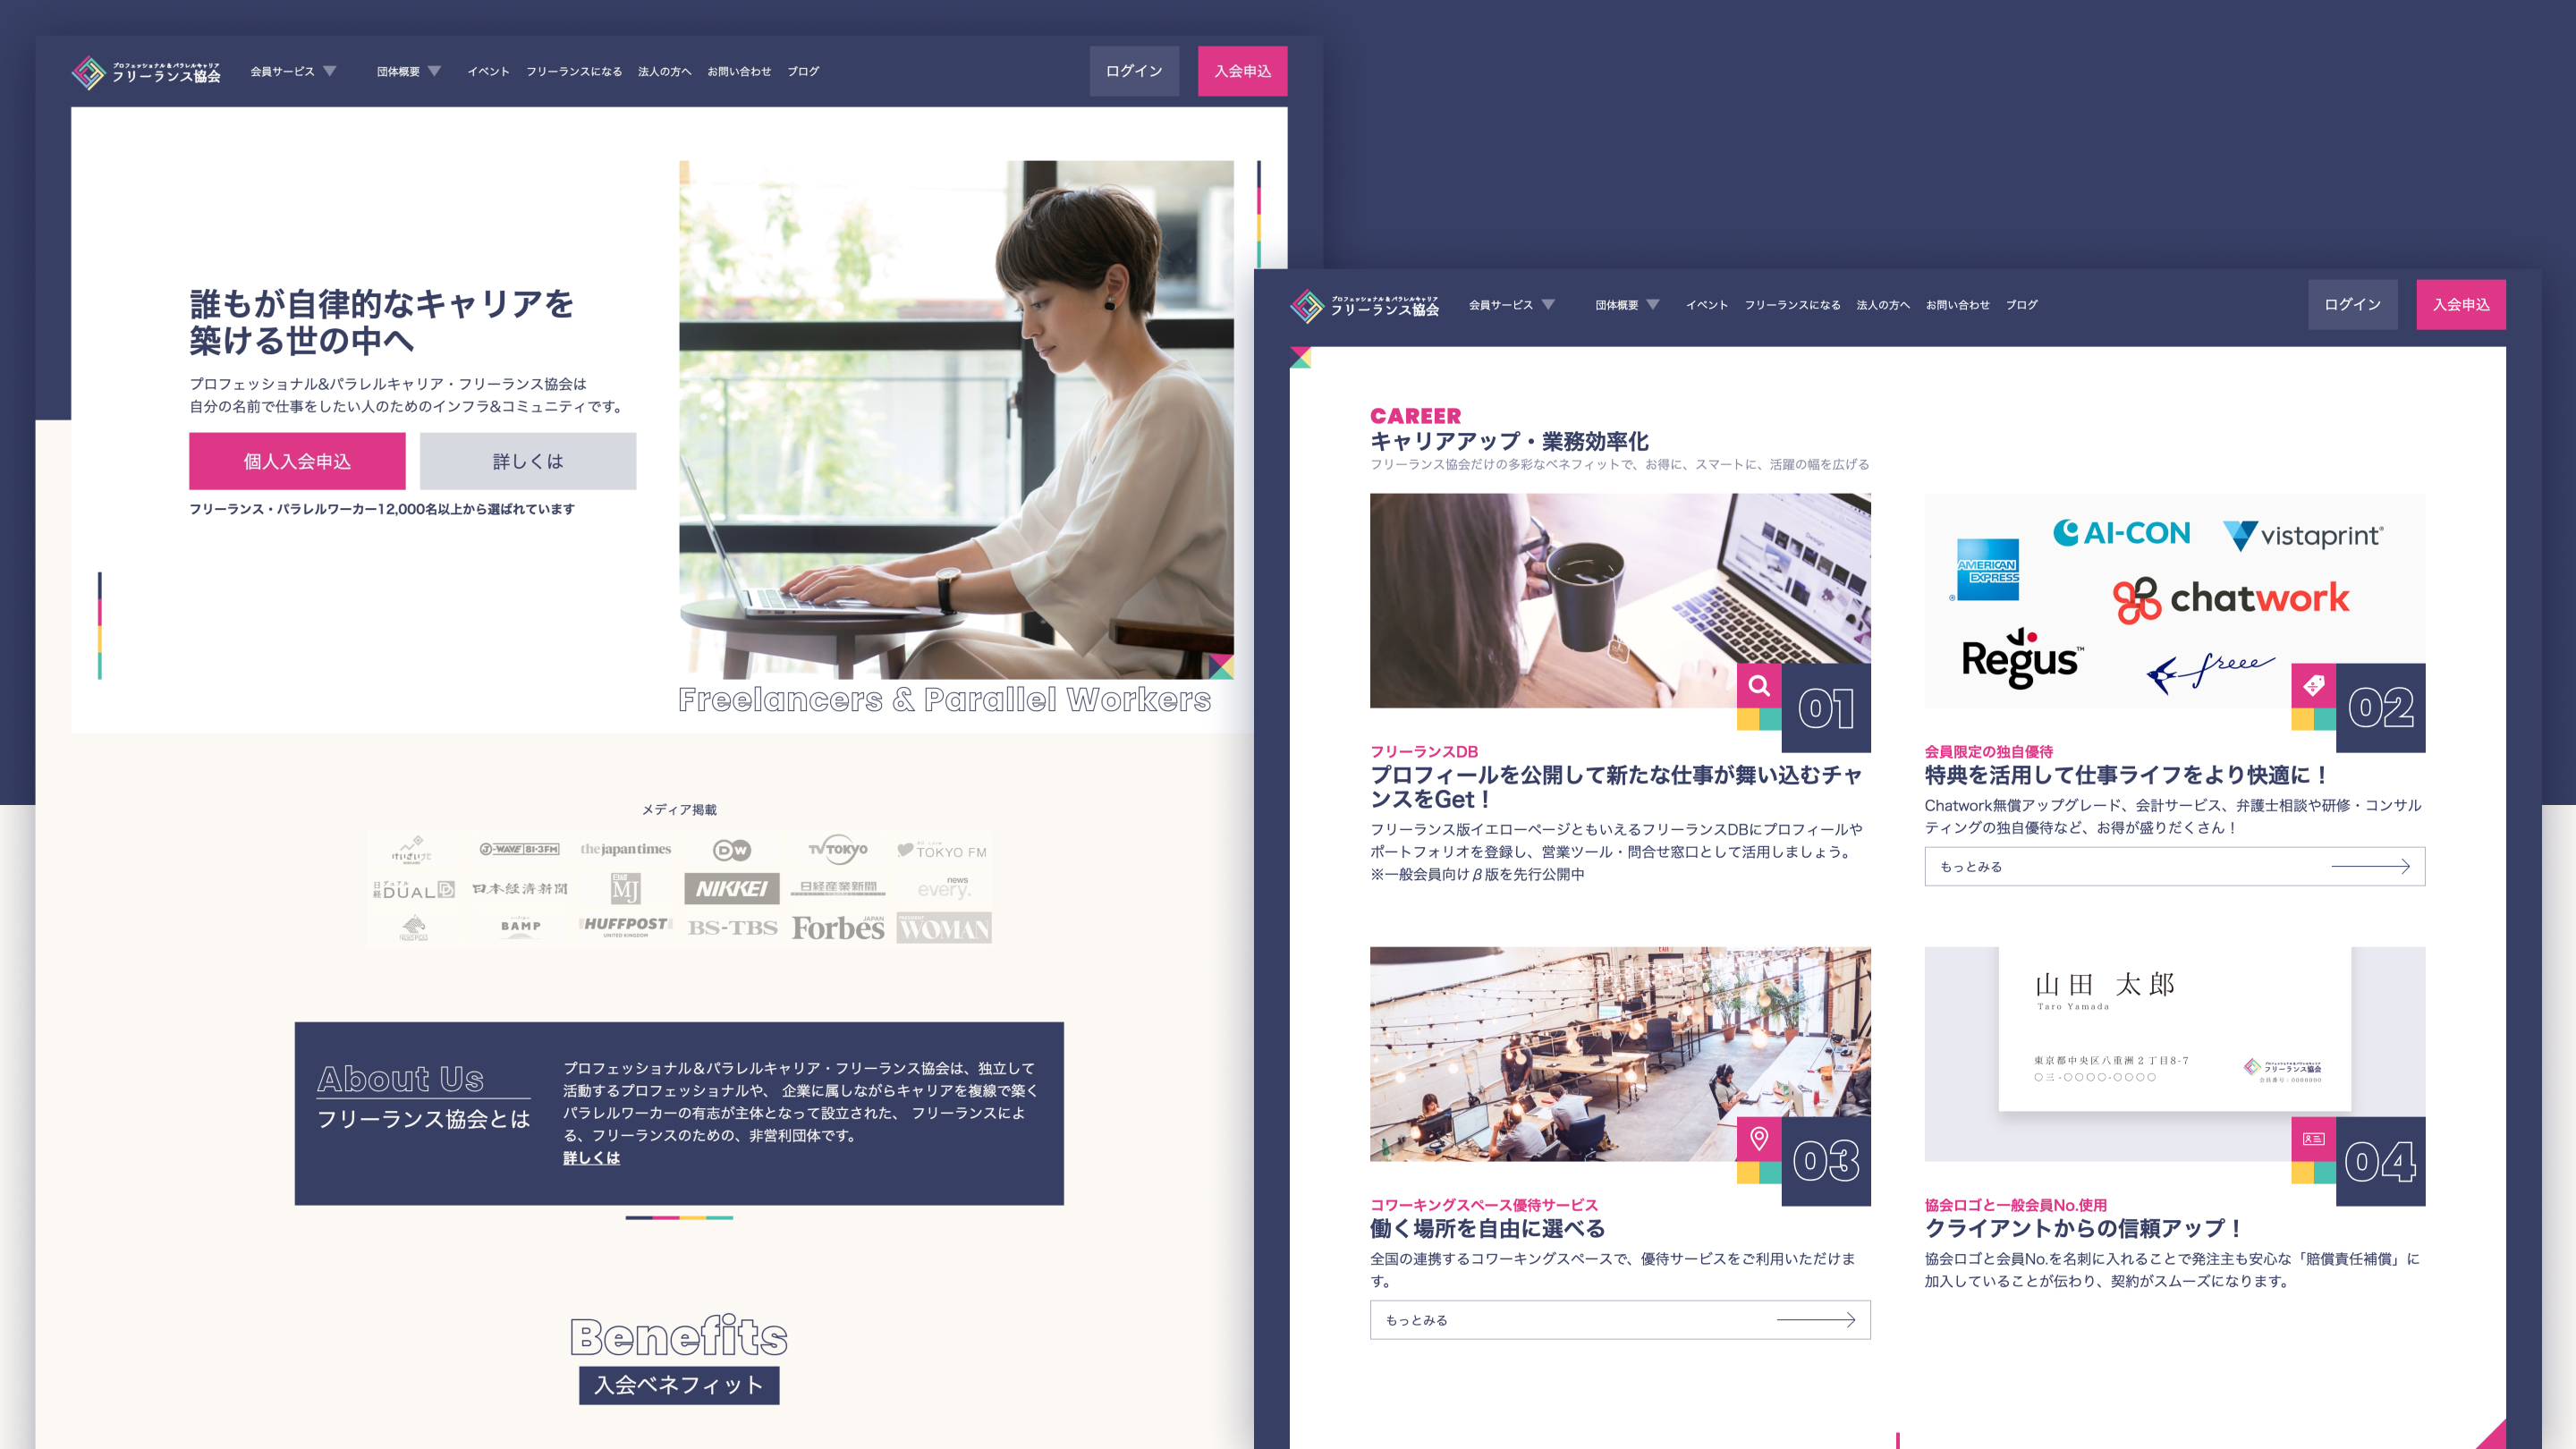 web design